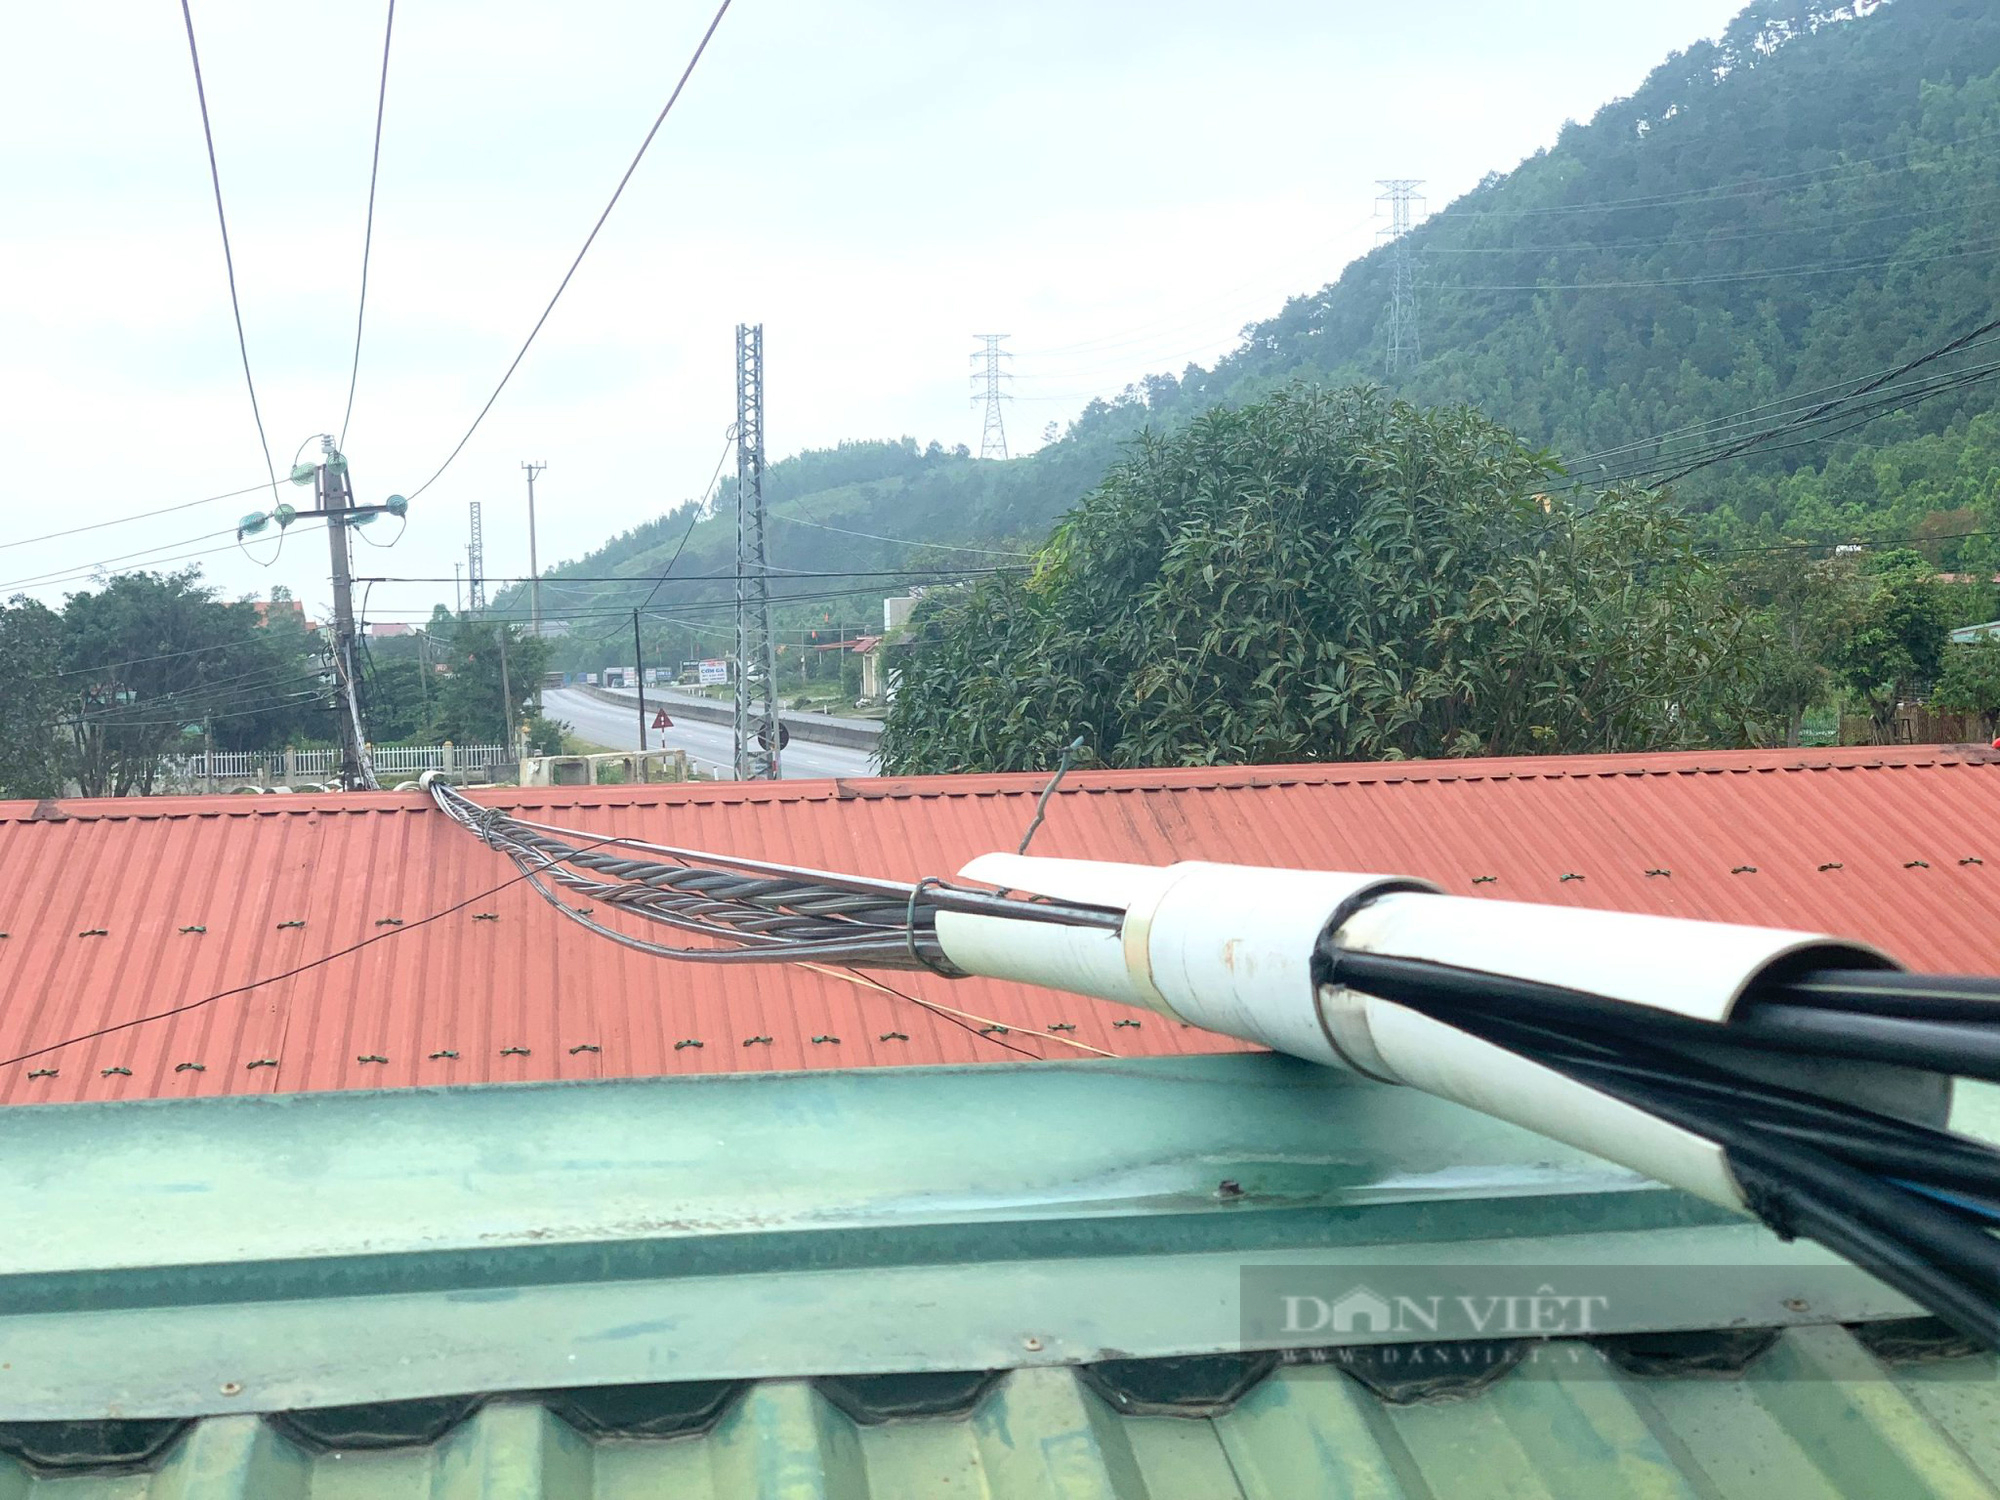 Quảng Bình: Đường dây điện áp sát mái nhà, đe doạ tính mạng người dân - Ảnh 1.